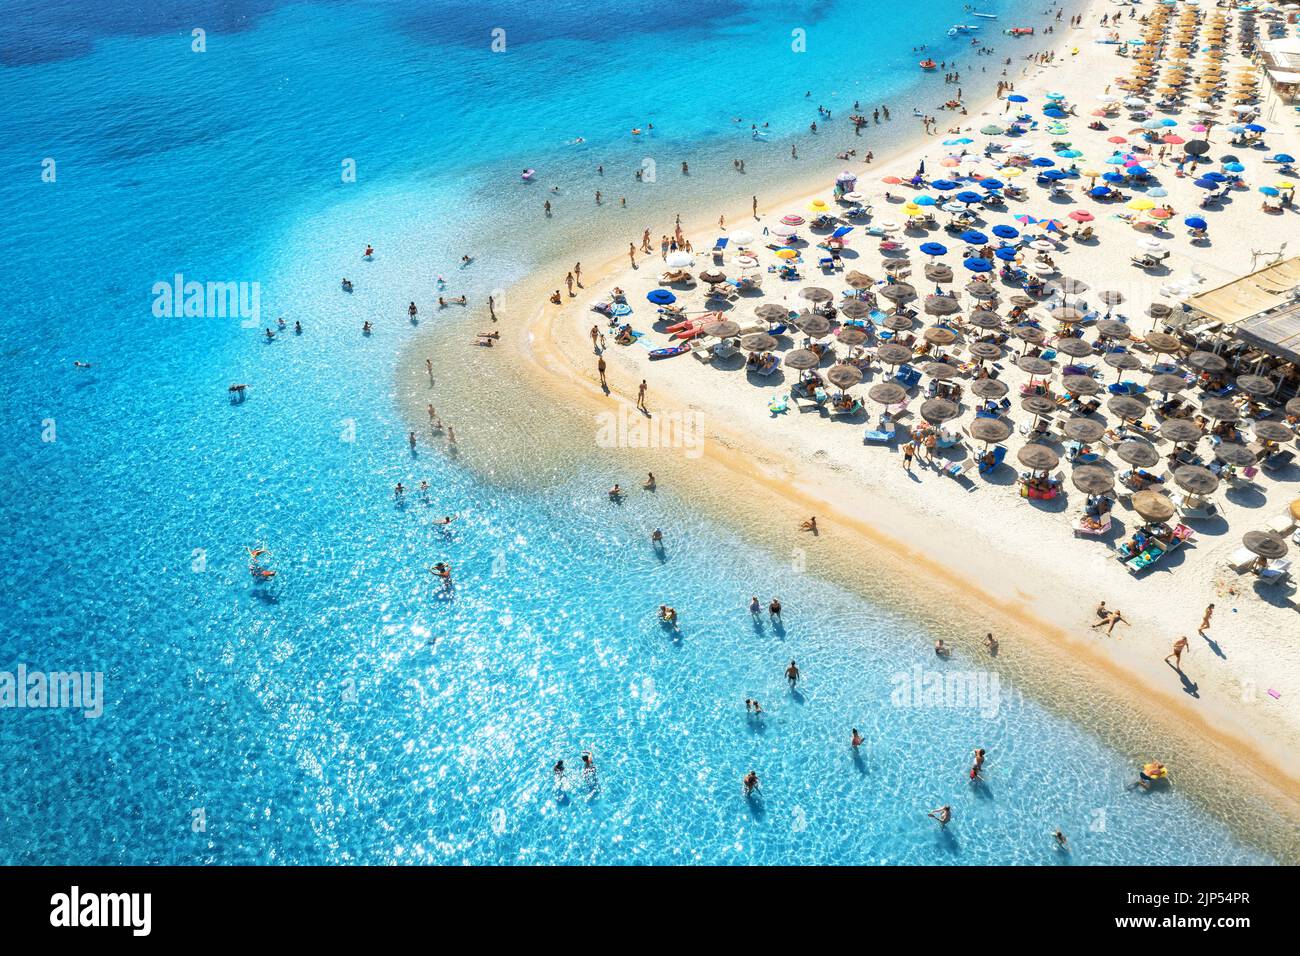 Luftaufnahme von bunten Sonnenschirmen am Sandstrand, Menschen im blauen Meer bei Sonnenuntergang im Sommer. Tuerredda Beach, Sardinien, Italien. Tropische Landschaft mit tu Stockfoto